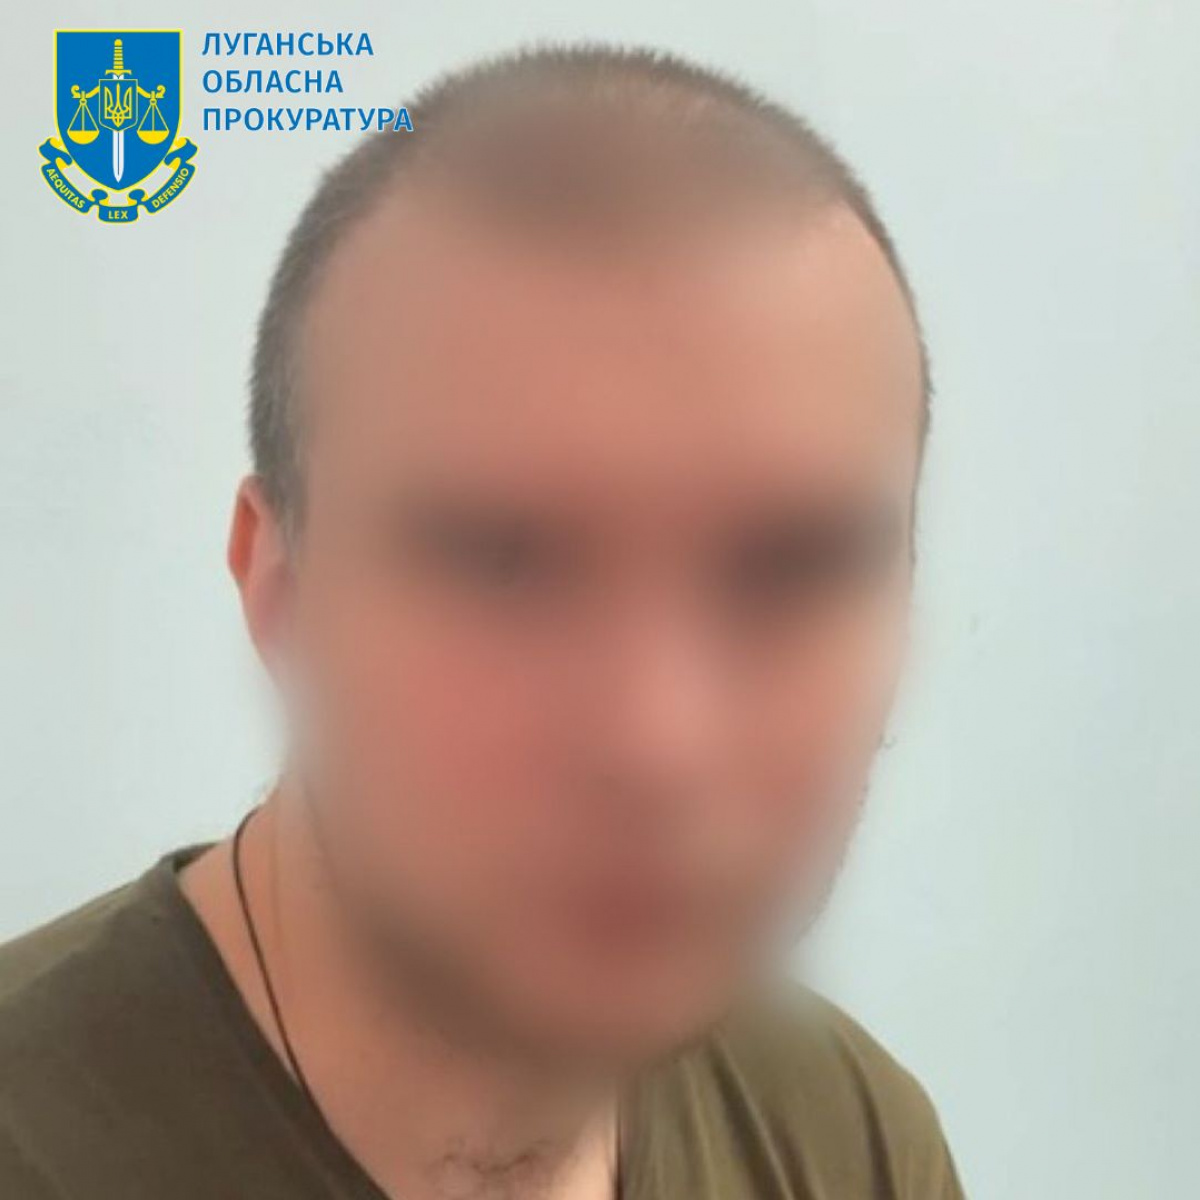 Мешканцю Луганська повідомили про підозру, він воював проти України